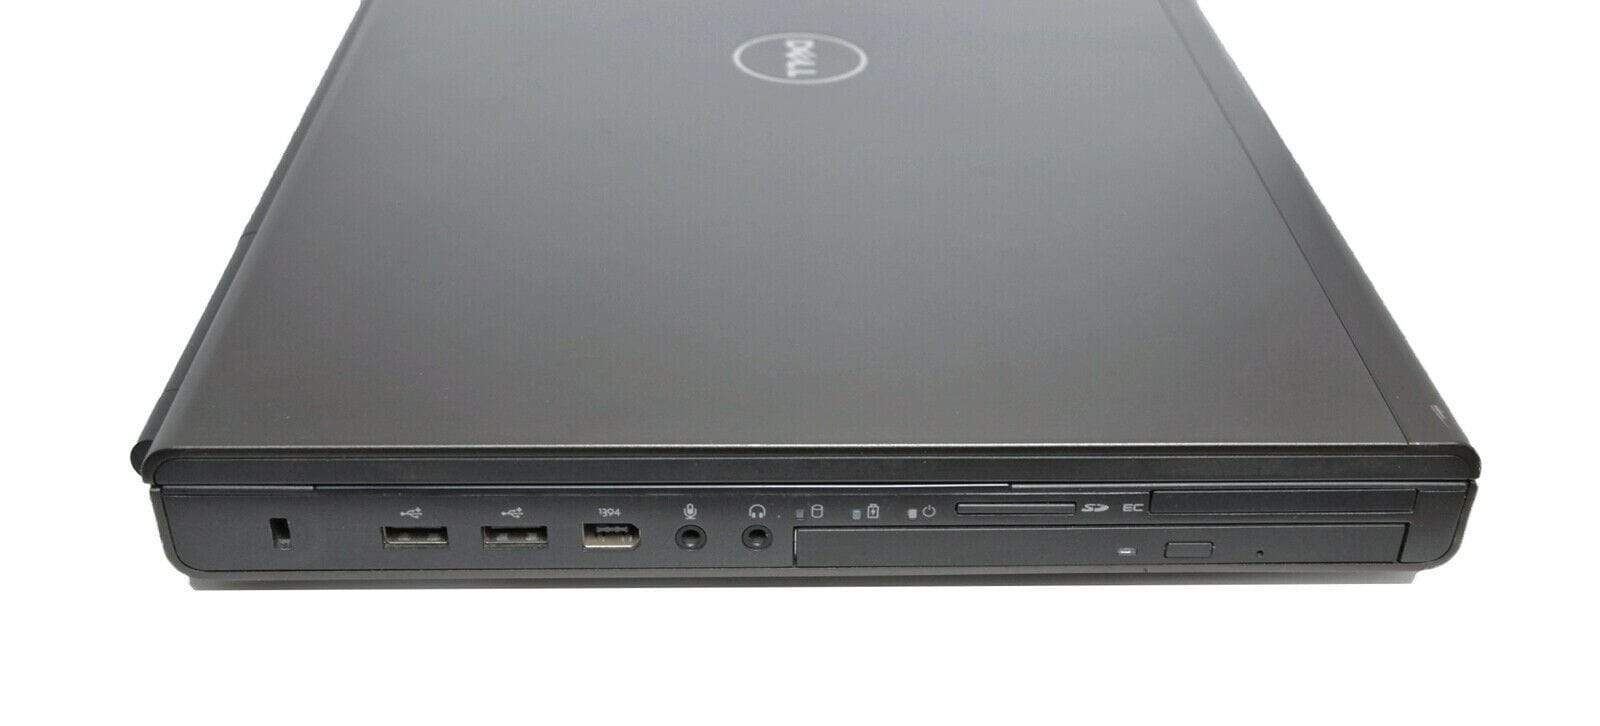 Dell Precision M6700 CAD Laptop: Core i7, Quadro, 240GB SSD, VAT Warranty - CruiseTech